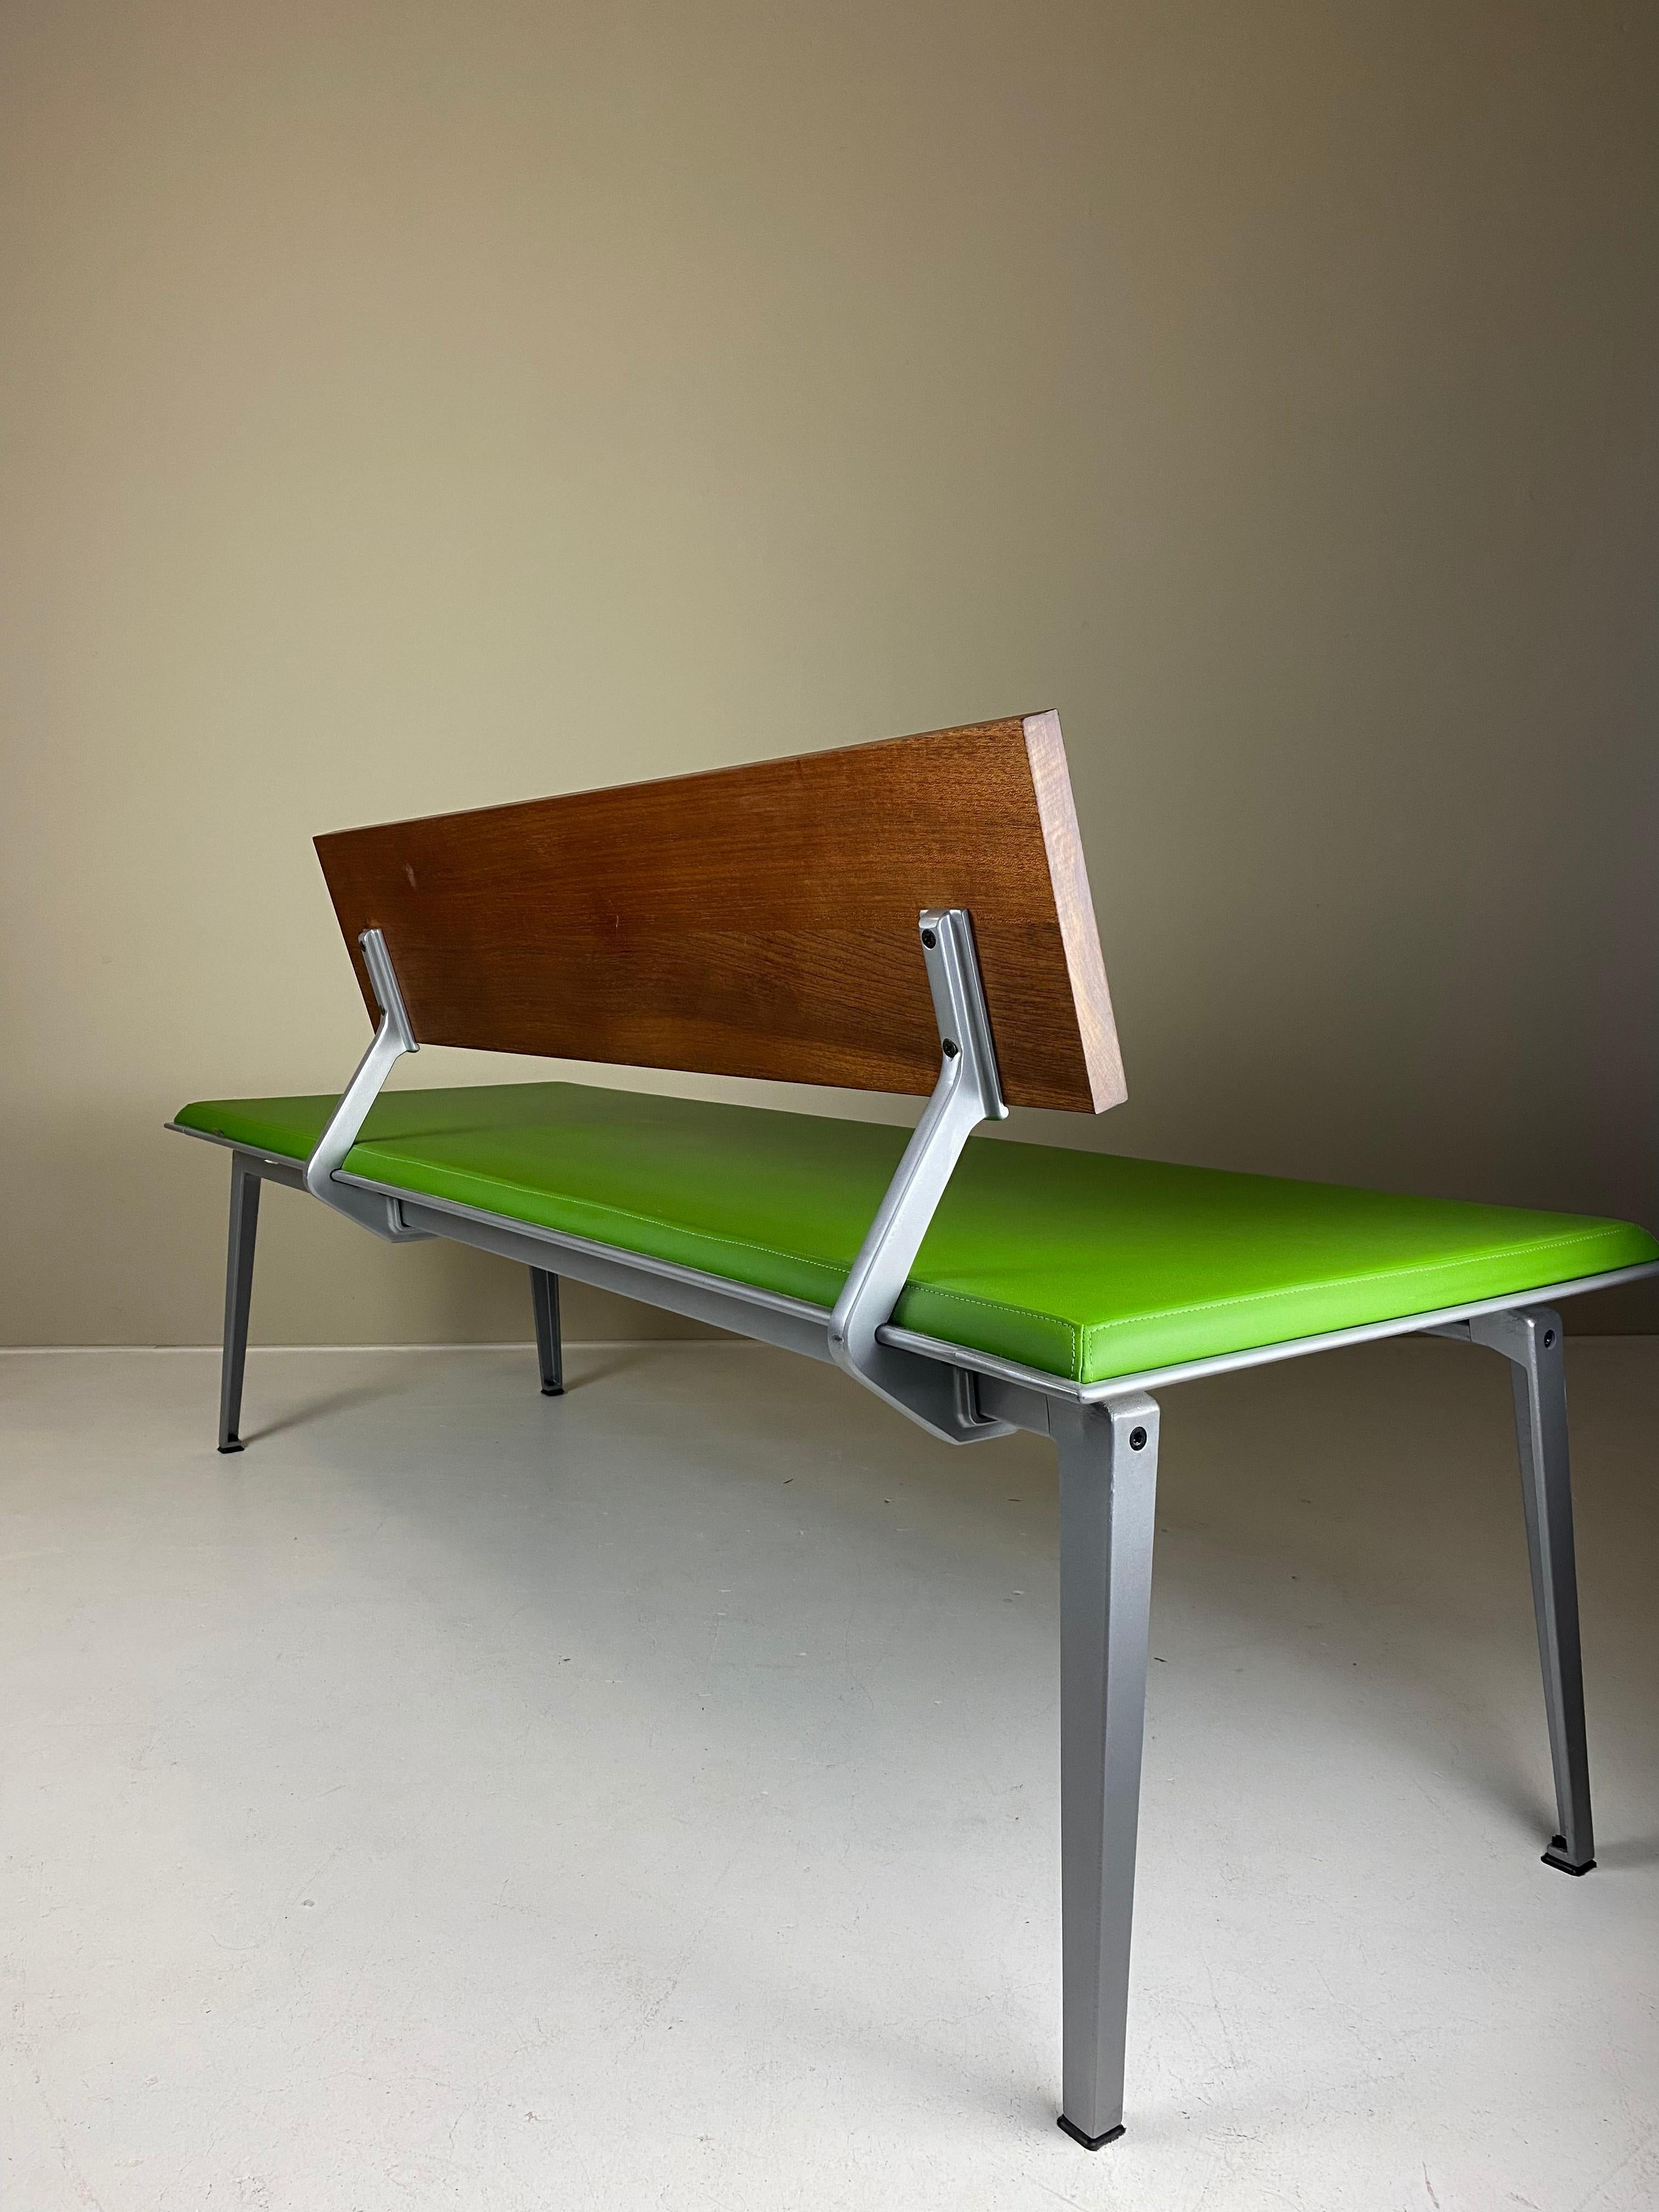 Né en 1950 et formé à l'Académie Rietveld d'Amsterdam, Bas Pruyser a conçu du mobilier scolaire et des gammes de tables et de chaises pour le fabricant néerlandais Ahrend. Il est amusant de constater que Pruyser a connu son plus grand succès grâce à